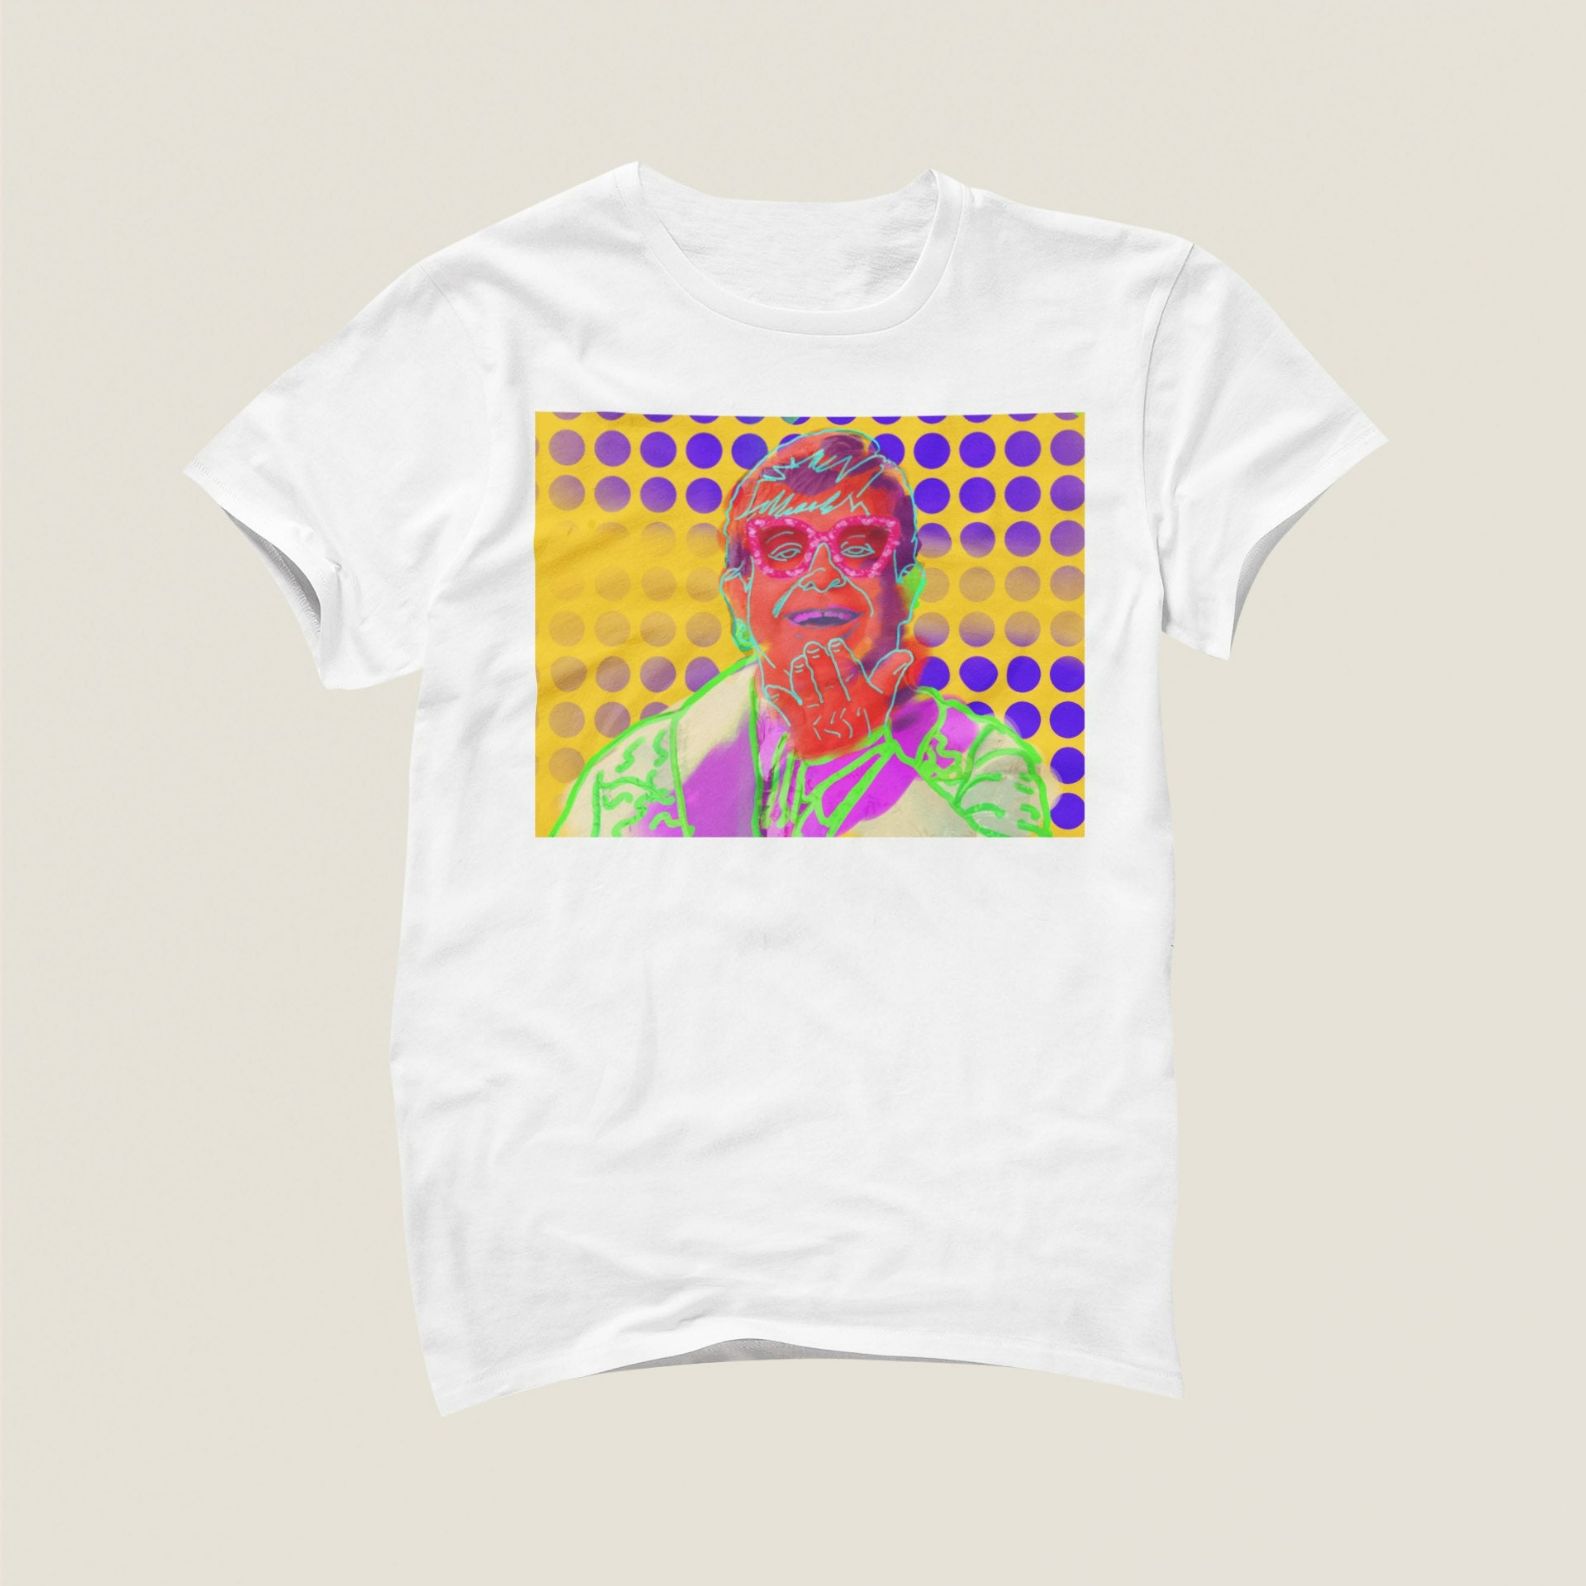 Elton John Colorful Art Design Short Sleeved T-Shirt